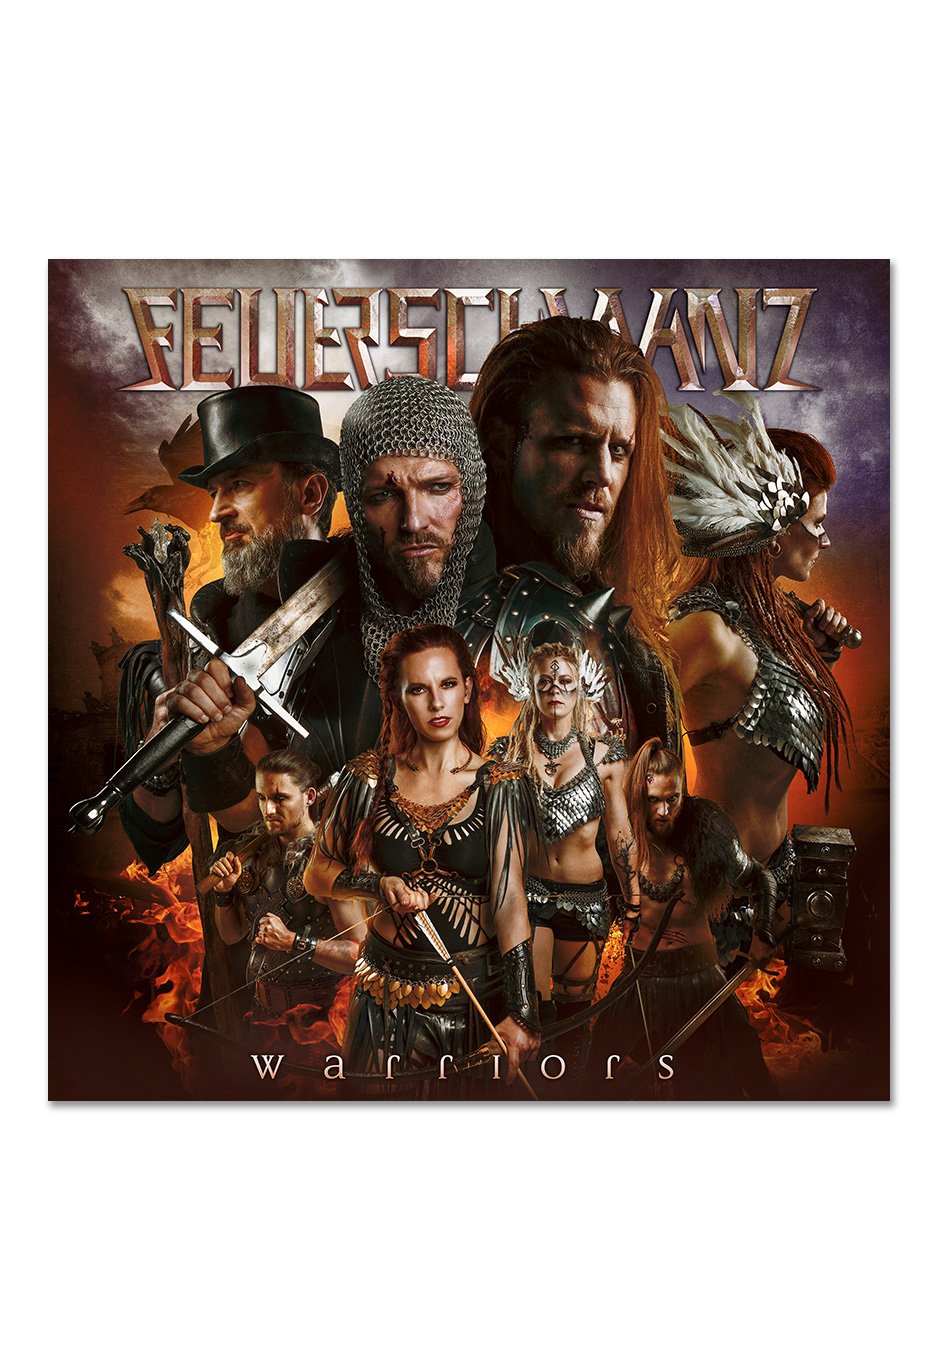 Feuerschwanz - Warriors - Vinyl